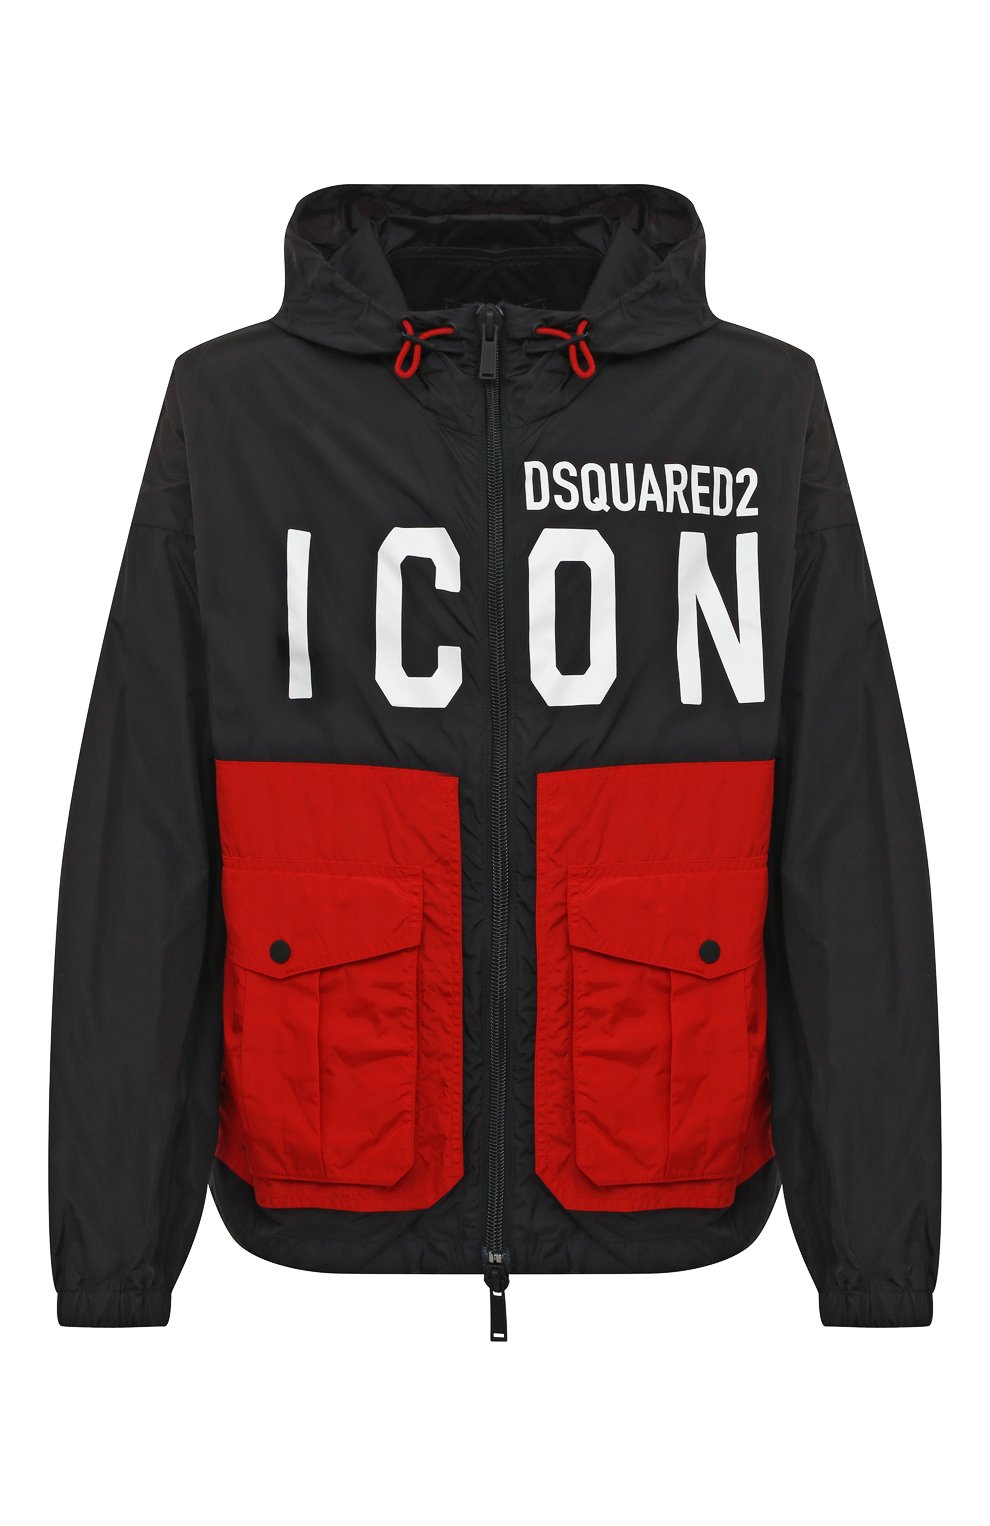 Куртки Dsquared2, Куртка Icon Dsquared2, Румыния, Чёрный, Полиамид: 100%;, 12879725  - купить